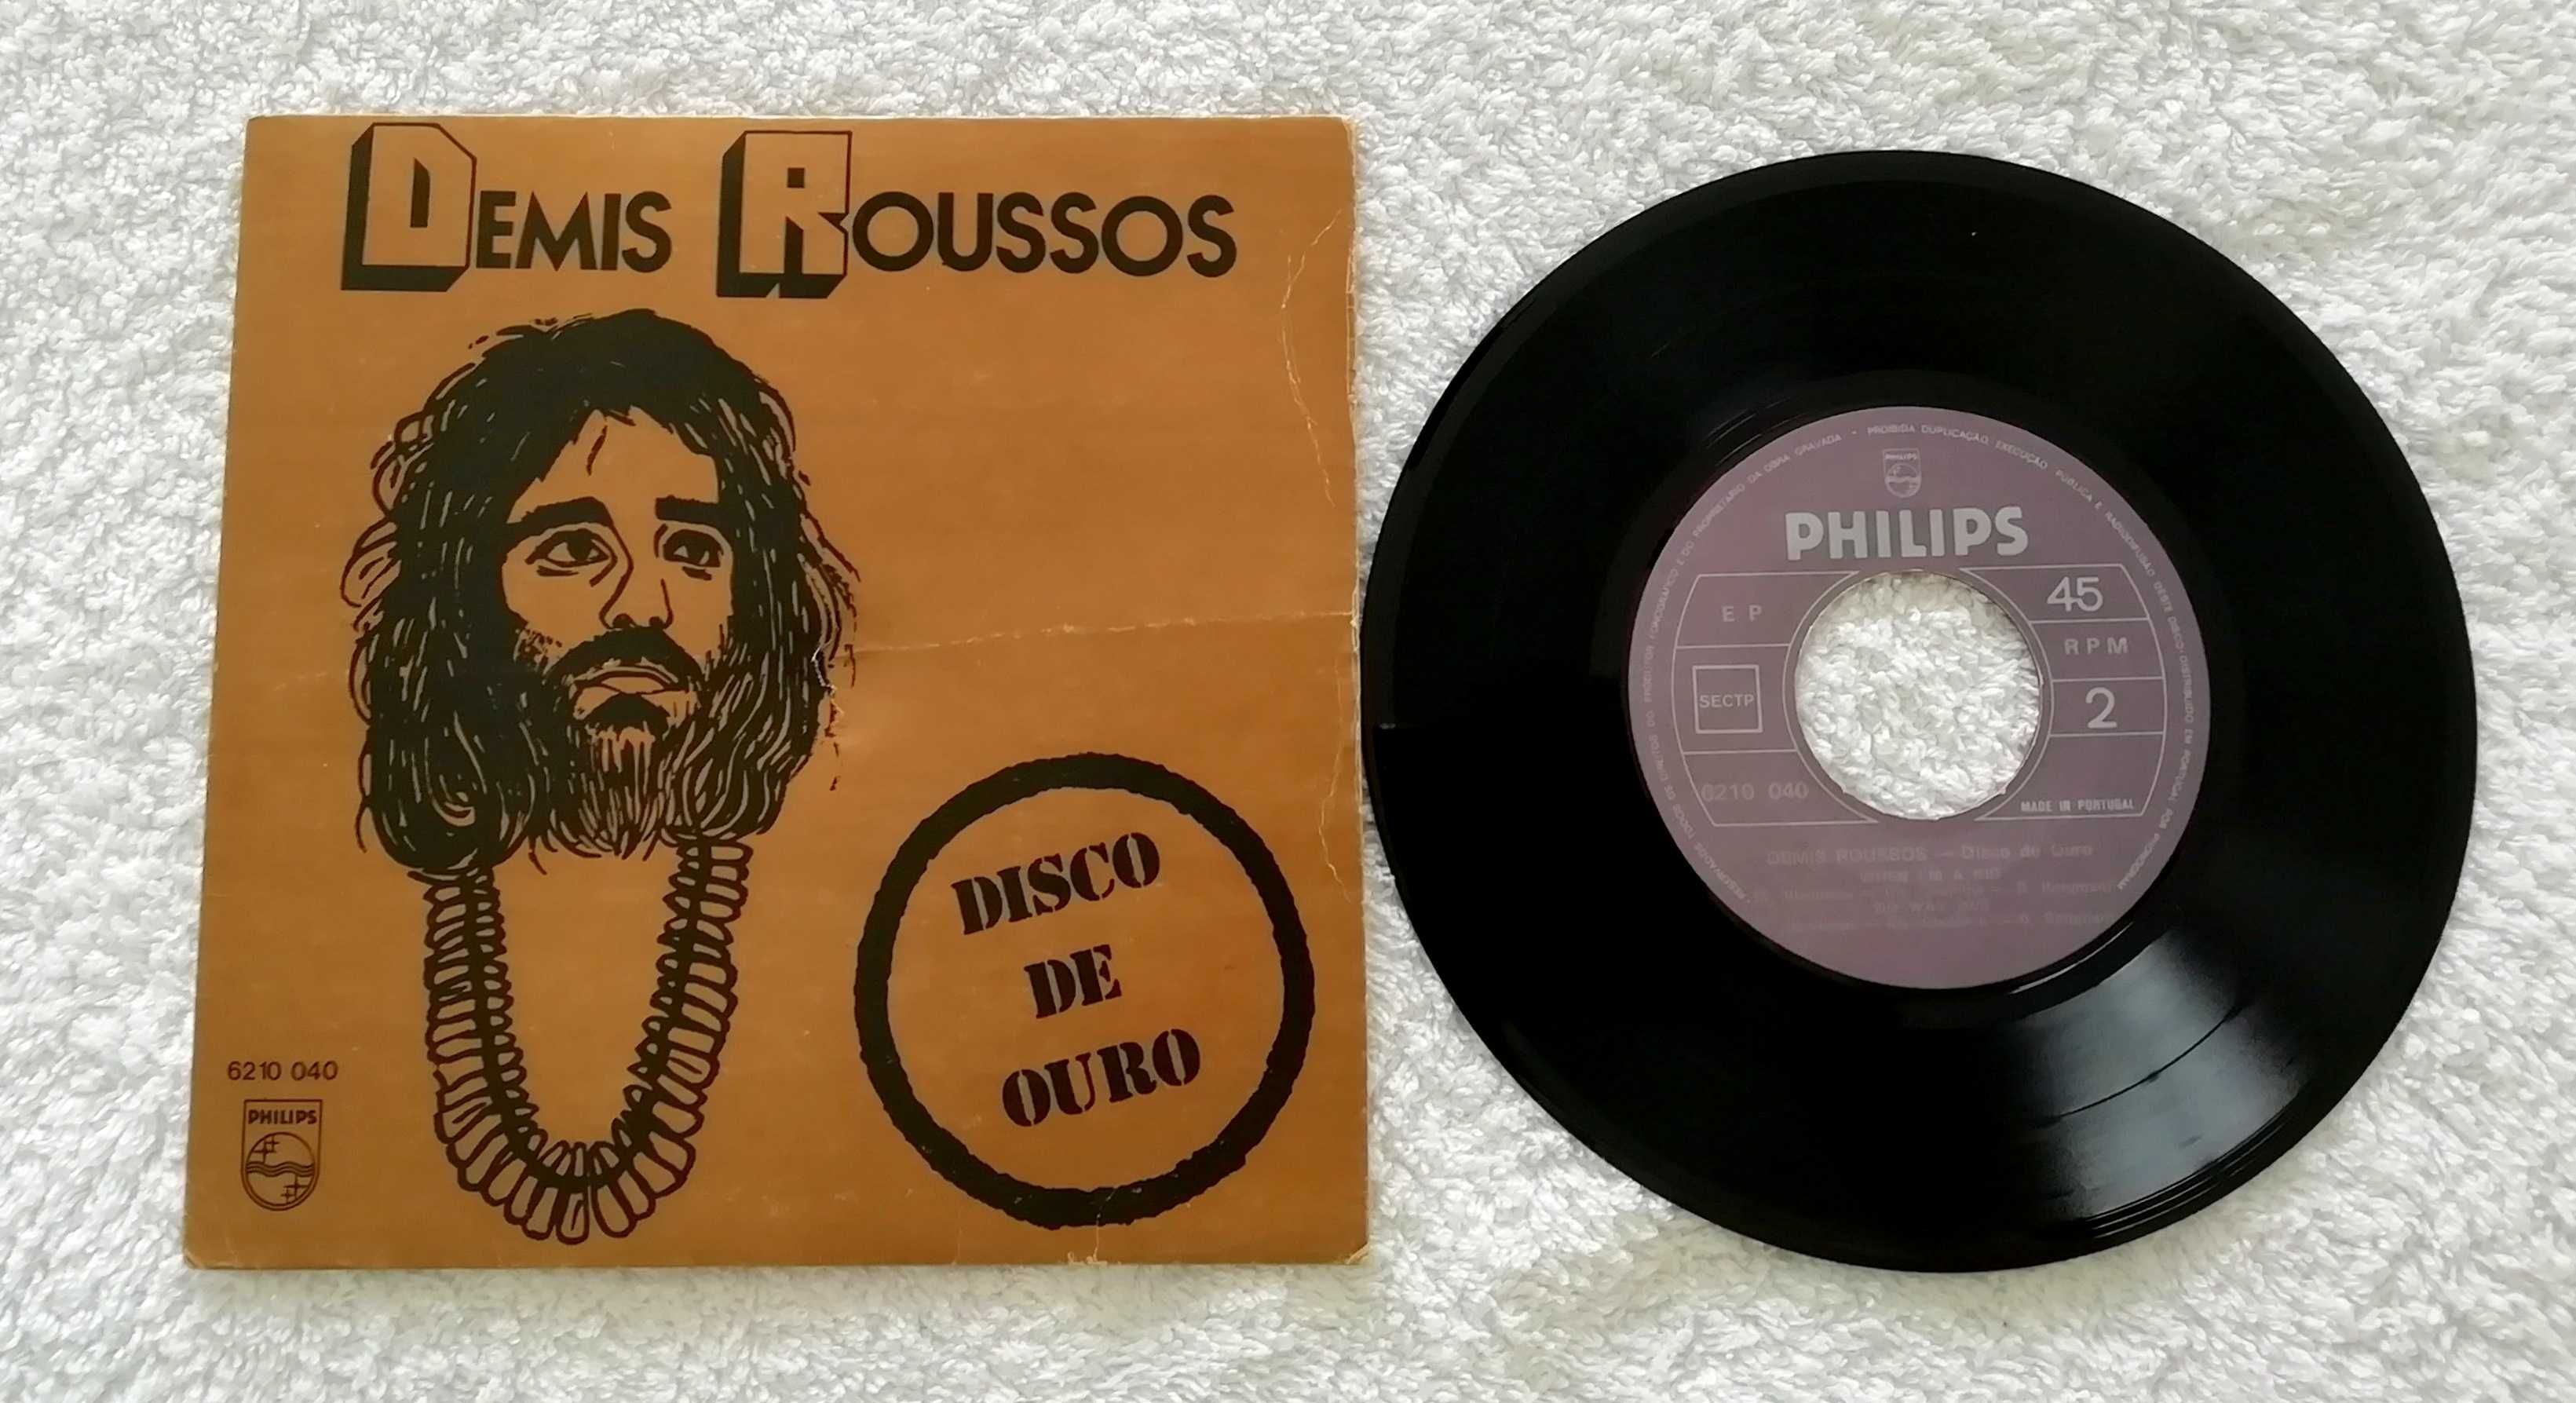 Disco Vinil Demis Roussos – Disco de Ouro